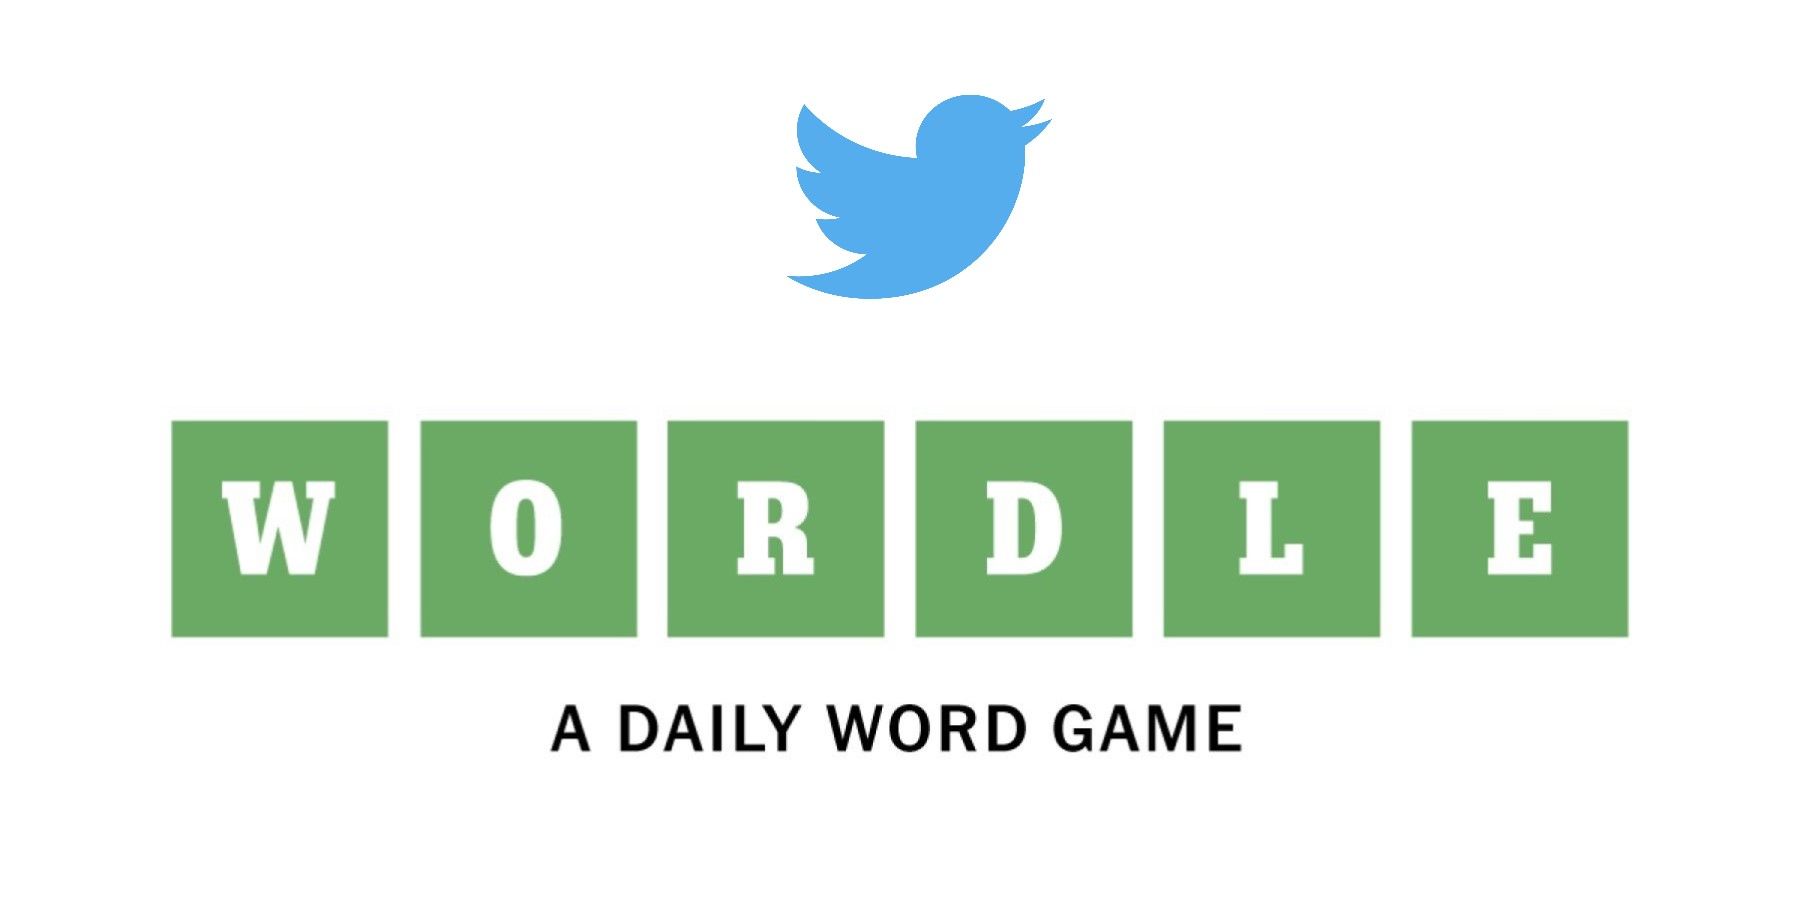 twitter-wordle-logo